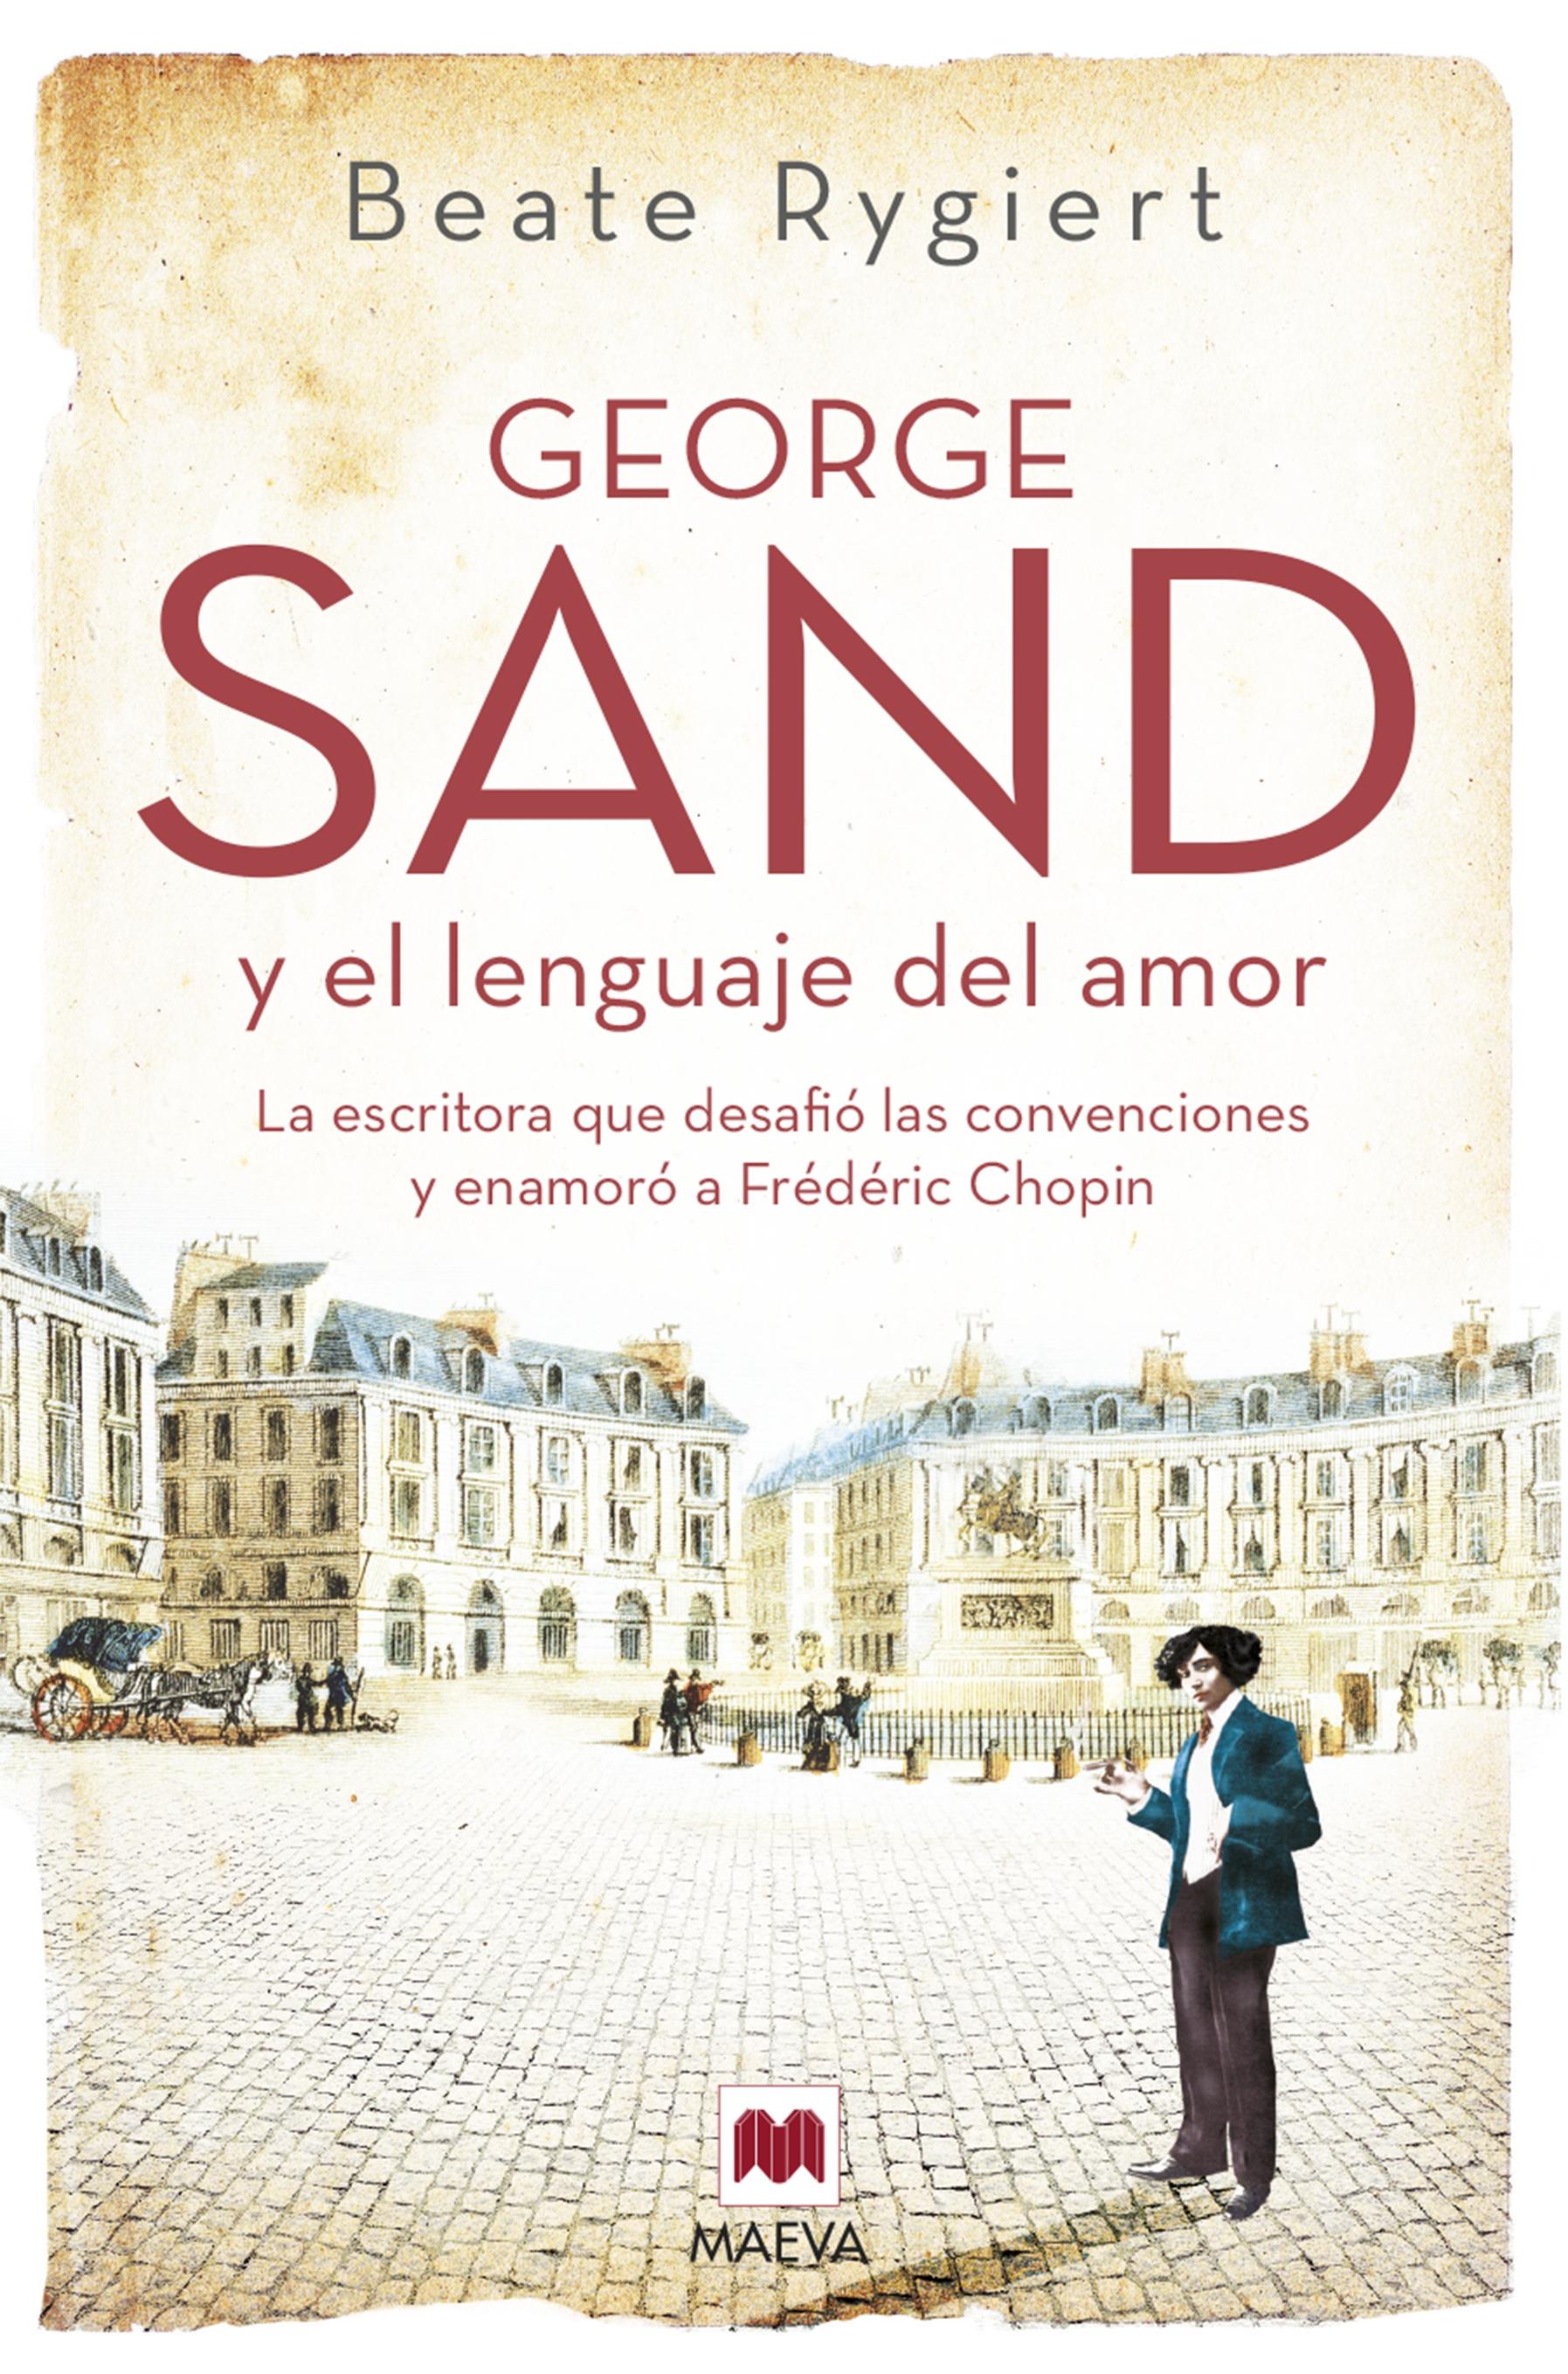 George Sand y el lenguaje del amor "La escritora que desafió las convenciones y enamoró a Fréderic Chopin".  9788419110510